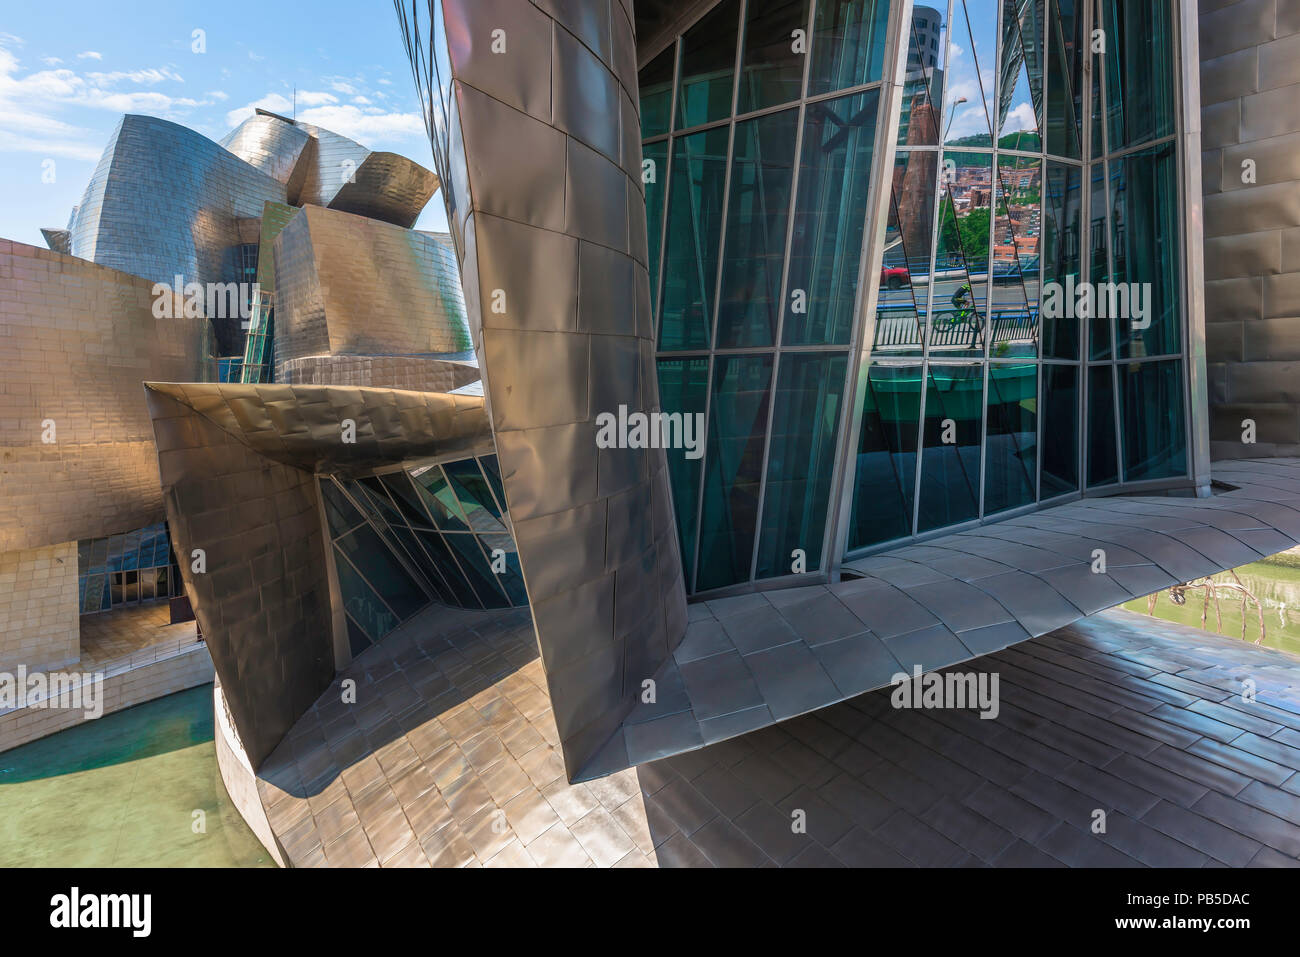 Musée Guggenheim, bâtiment vue rapprochée de l'orient de la Frank Gehry (musée Guggenheim conçu Museo Guggenheim) dans le centre de Bilbao, Espagne. Banque D'Images